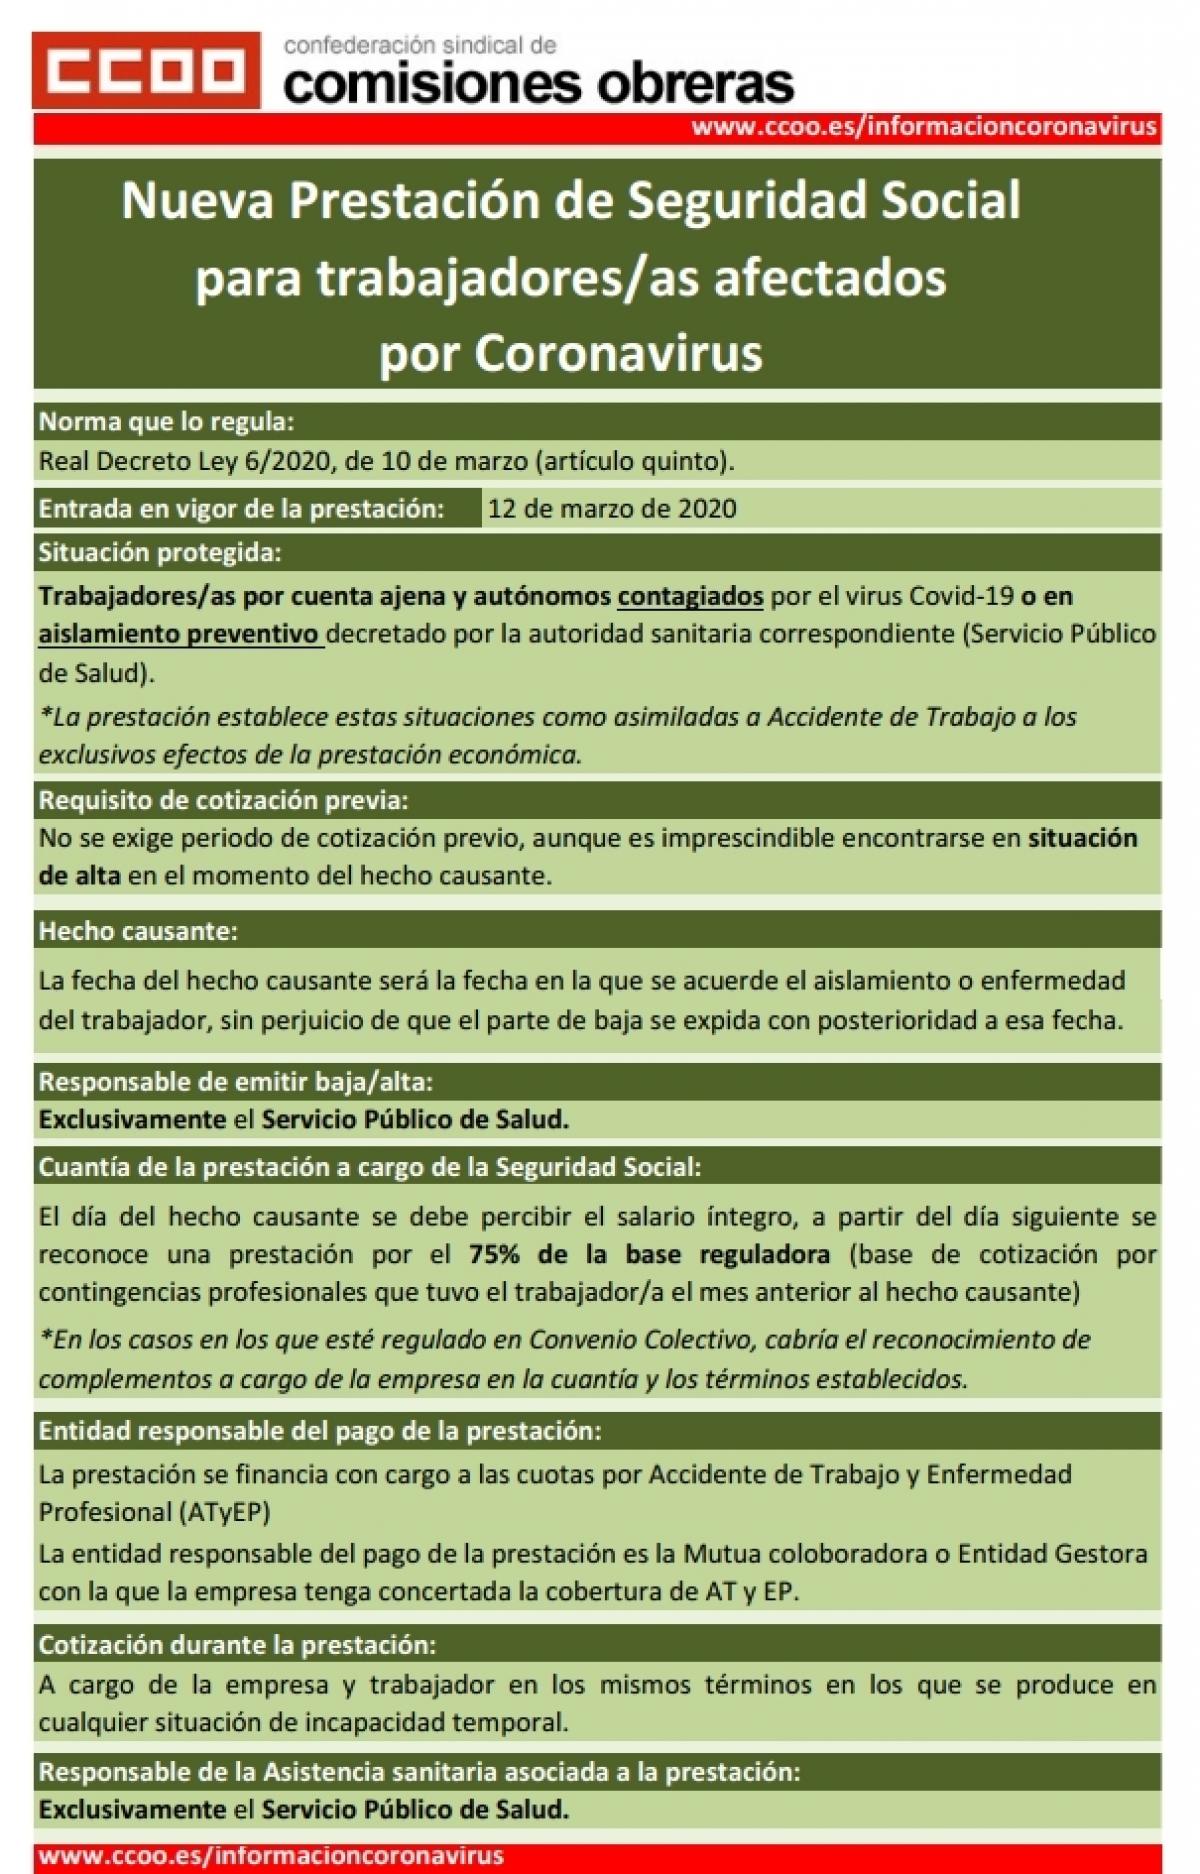 Prestaci�n de Seguridad Social para trabajadores y trabajadoras afectados por coronavirus